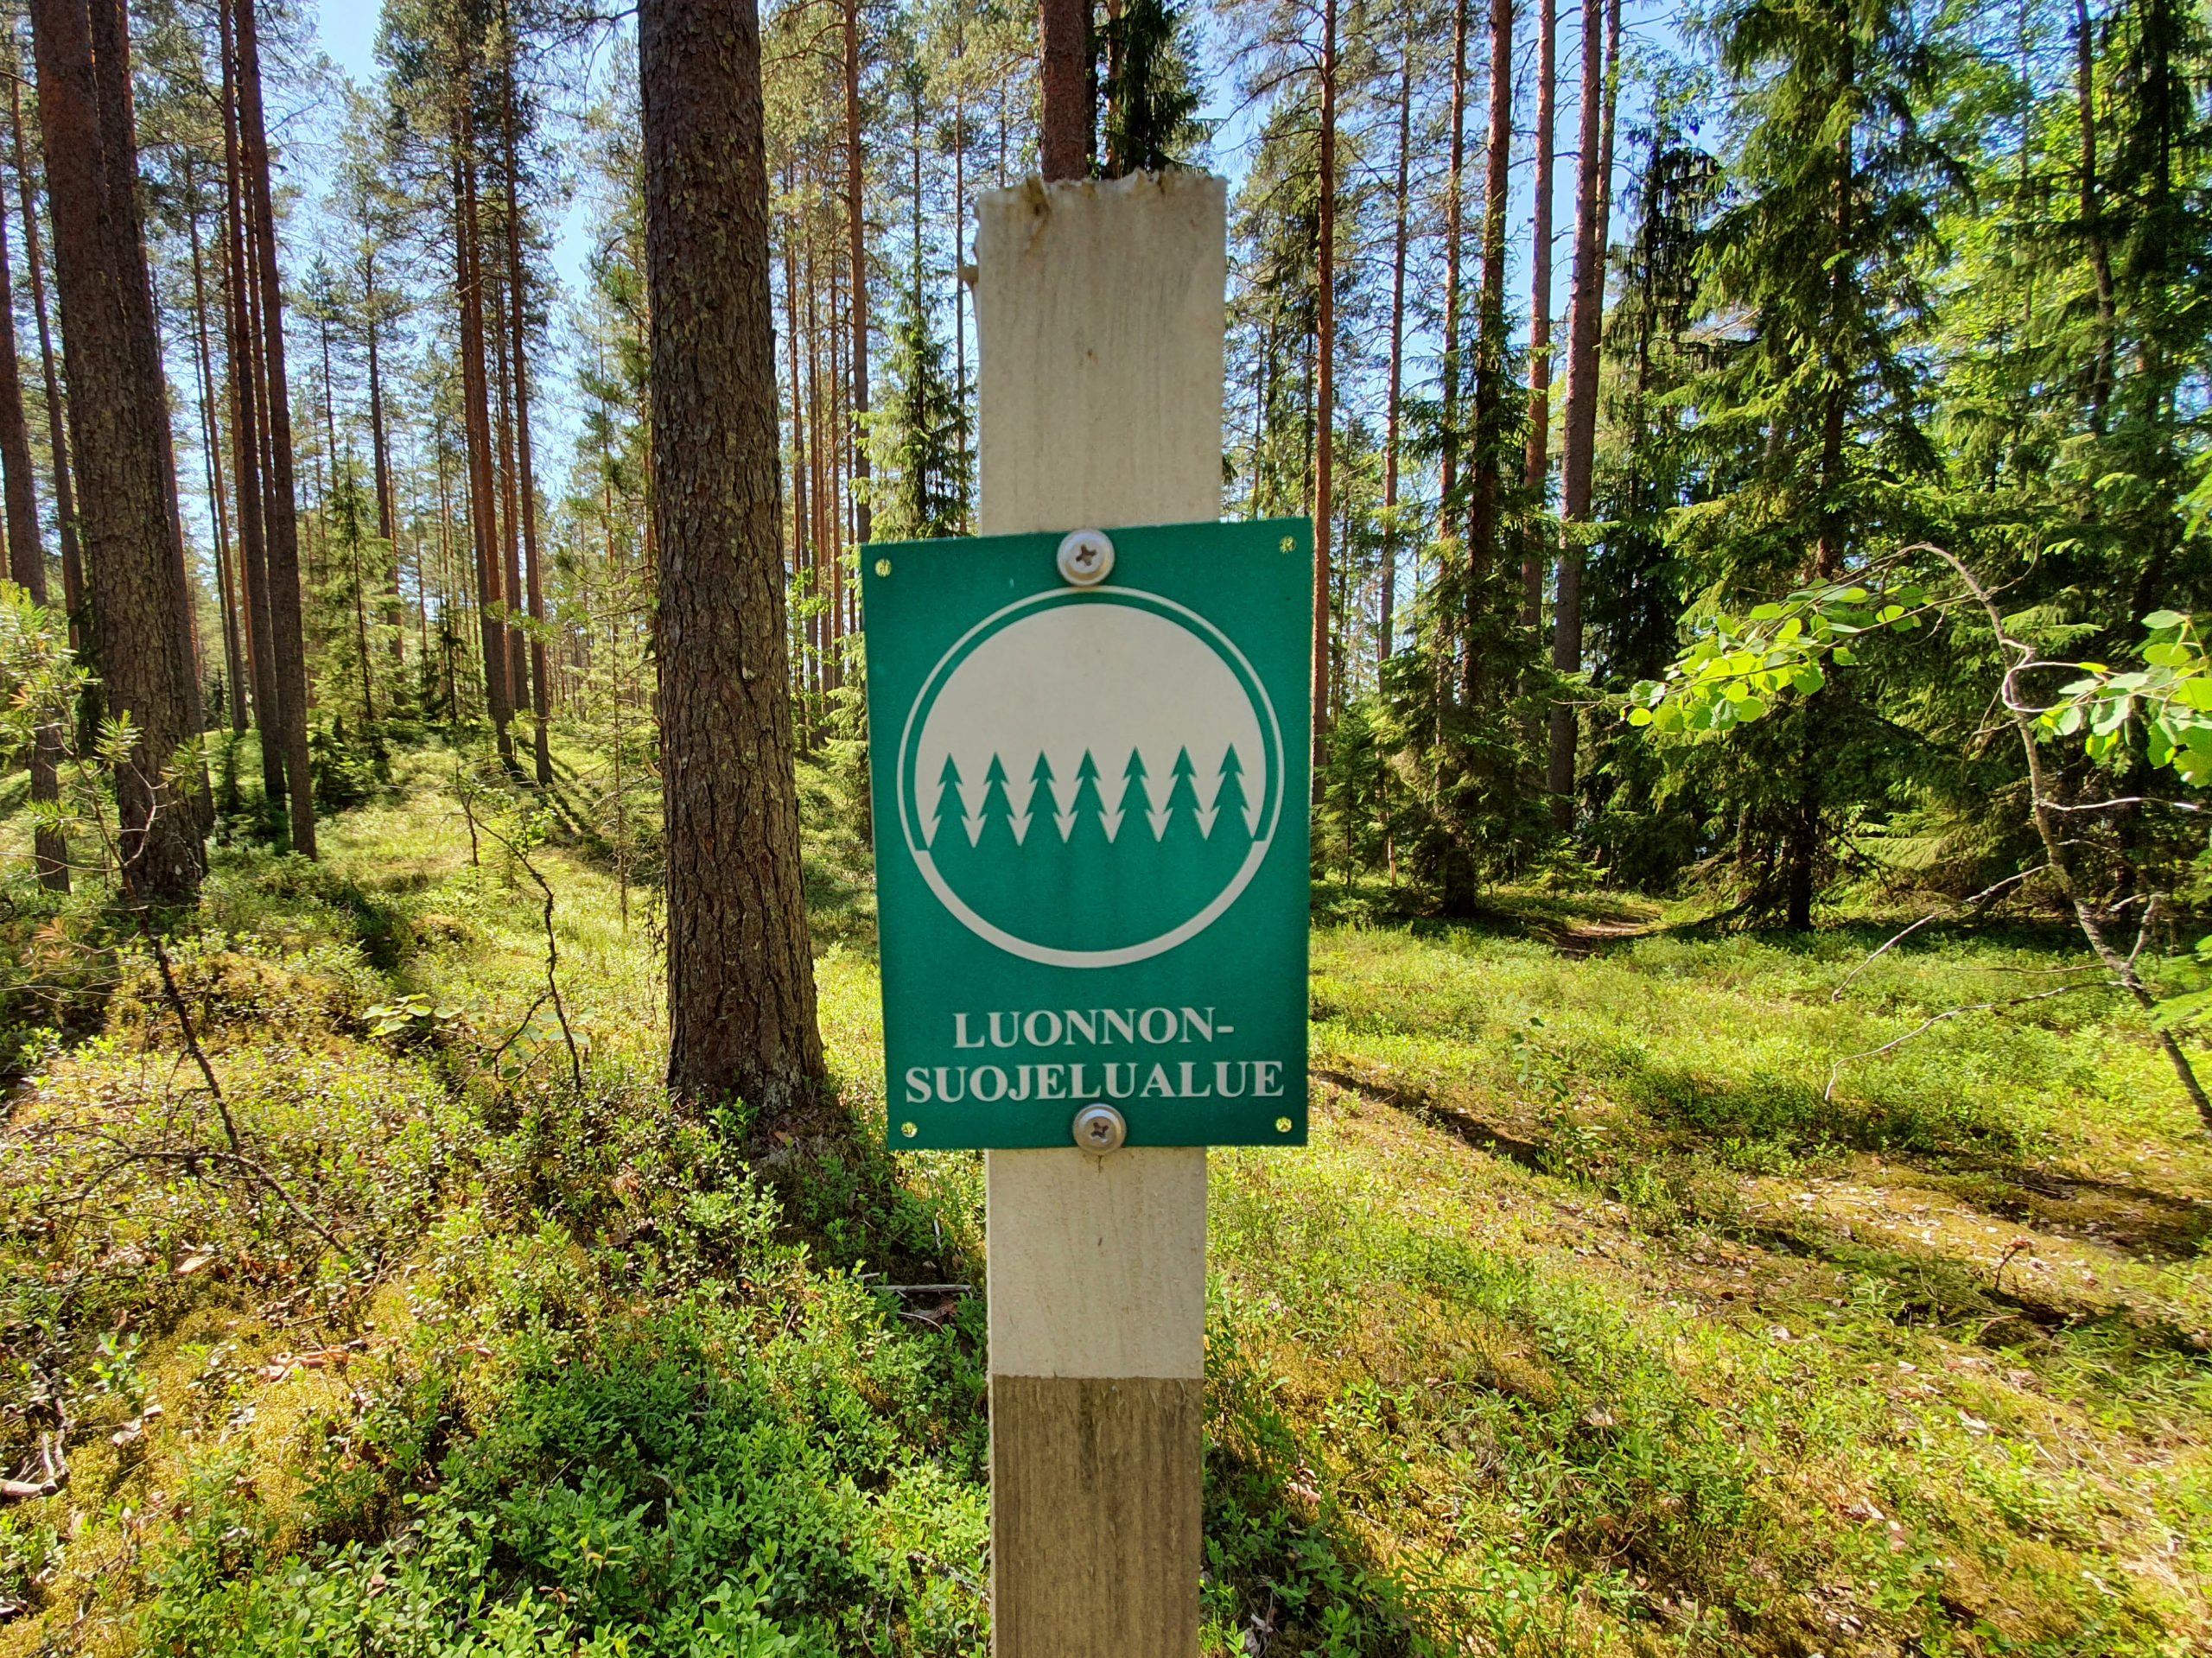 Kuvassa näkyy vihreä pylvääseen kiinnitetty merkki, jossa lukee "Luonnonsuojelualue". Taustalla näkyy havumetsää ja mustikanvarpuja. Maisema on aurinkoinen.